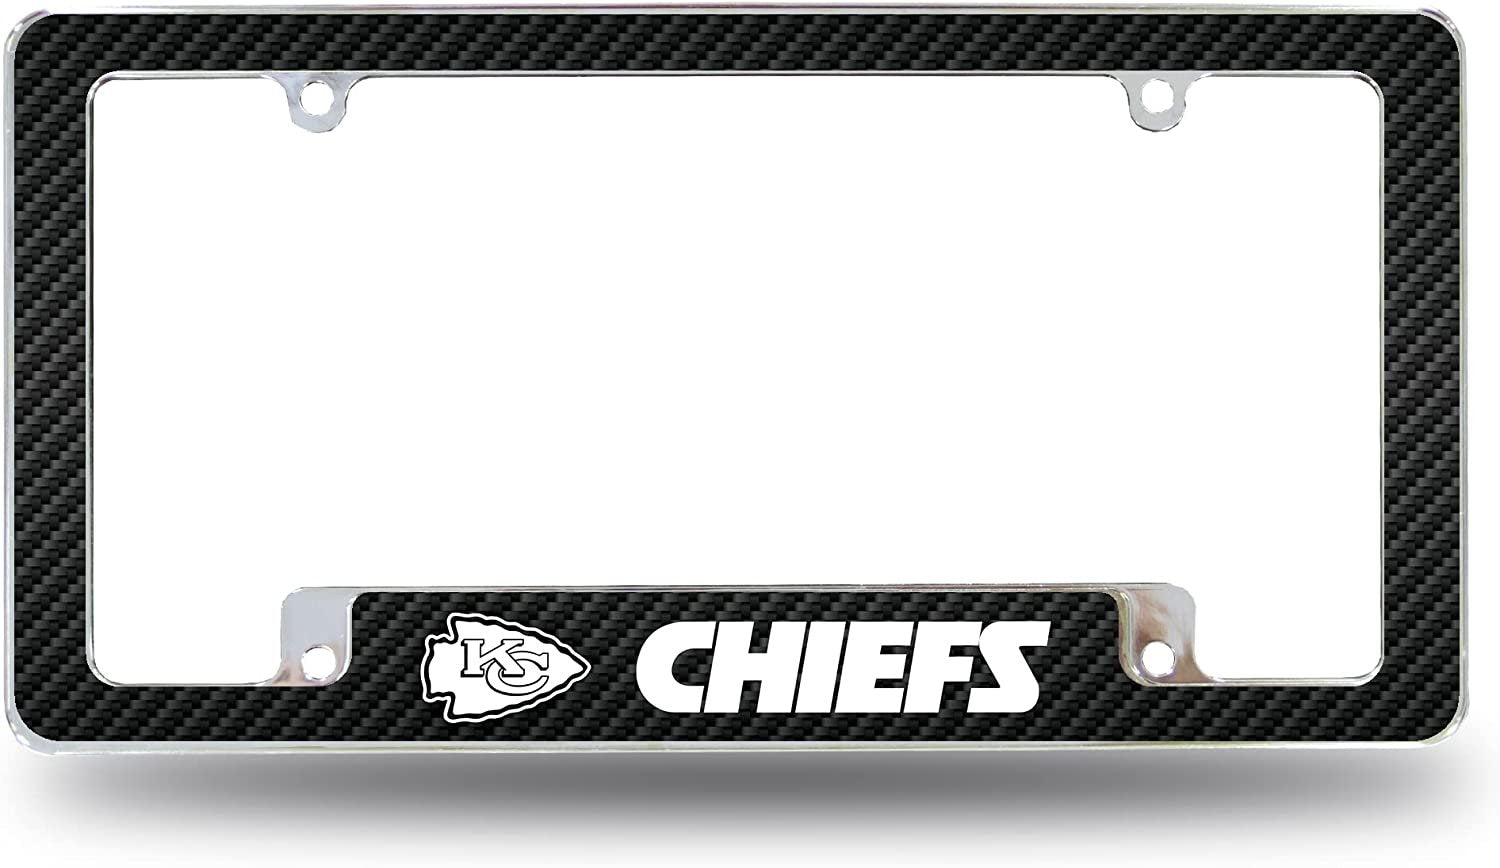 Kansas City Chiefs Metal License Plate Frame Chrome Tag Cover Carbon Fiber Design 6x12 Inch